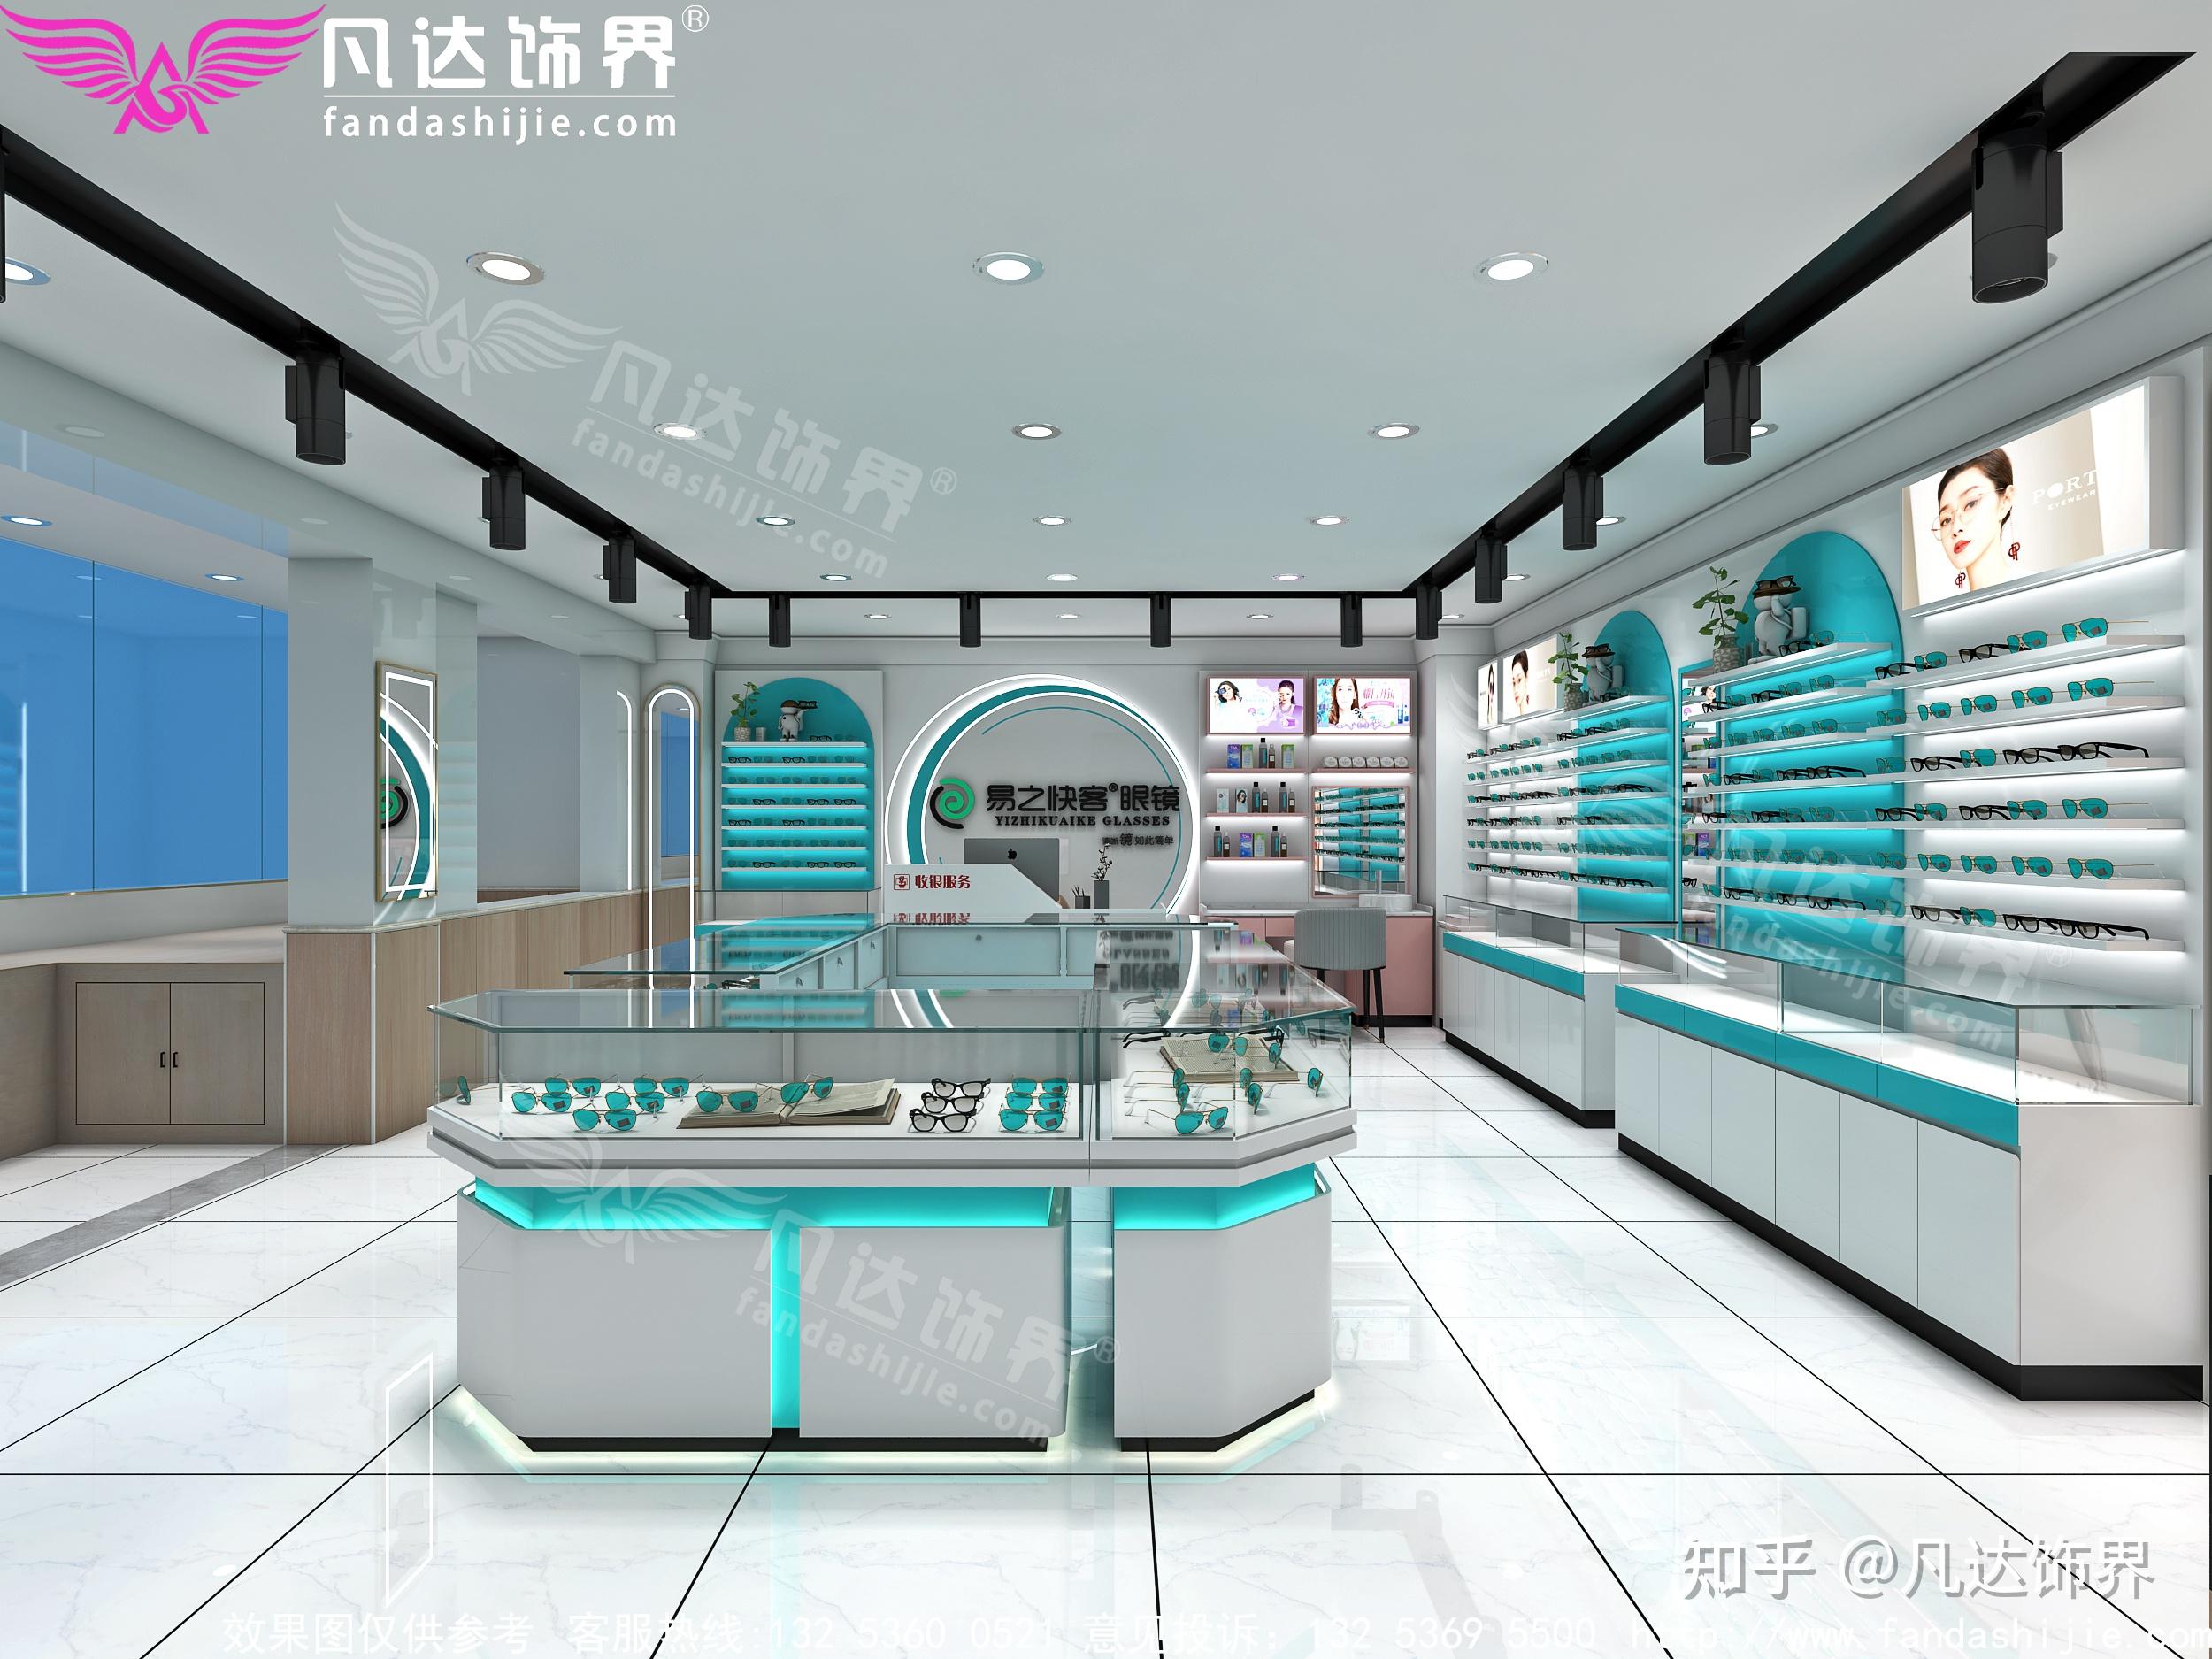 5种眼镜店爆款形象墙设计,让你的店面装修起来更有质感!